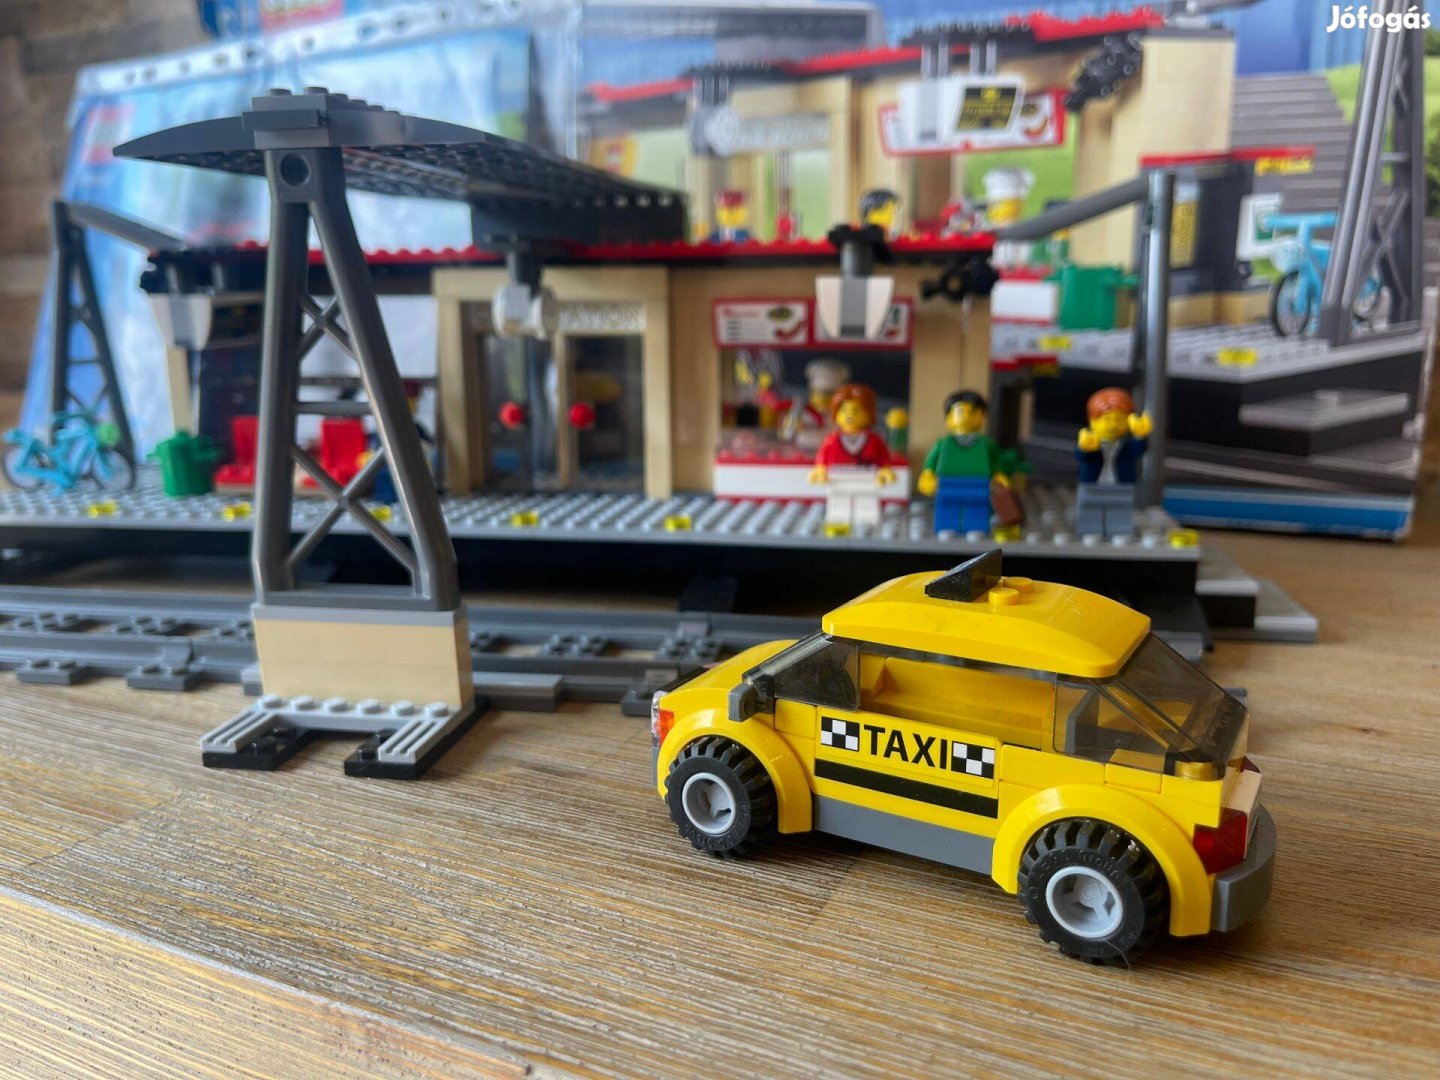 Lego 60050 vasutallomas vonatallomas Lego vonat vasut